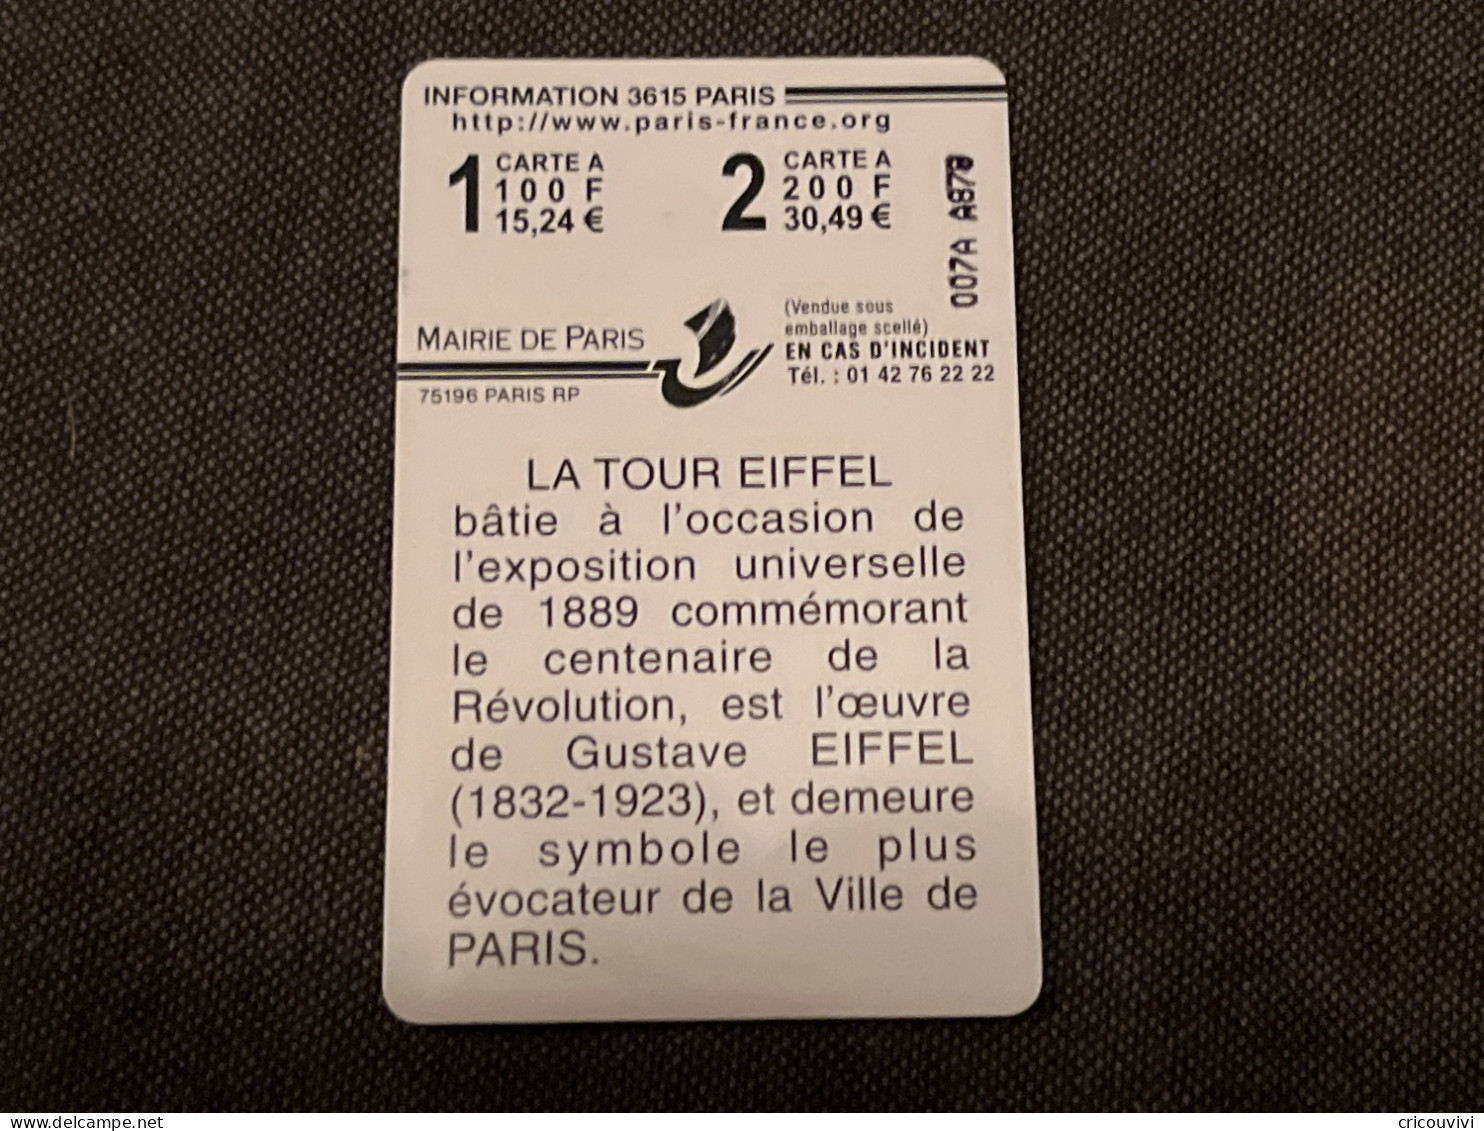 Paris Carte 14 - Cartes De Stationnement, PIAF